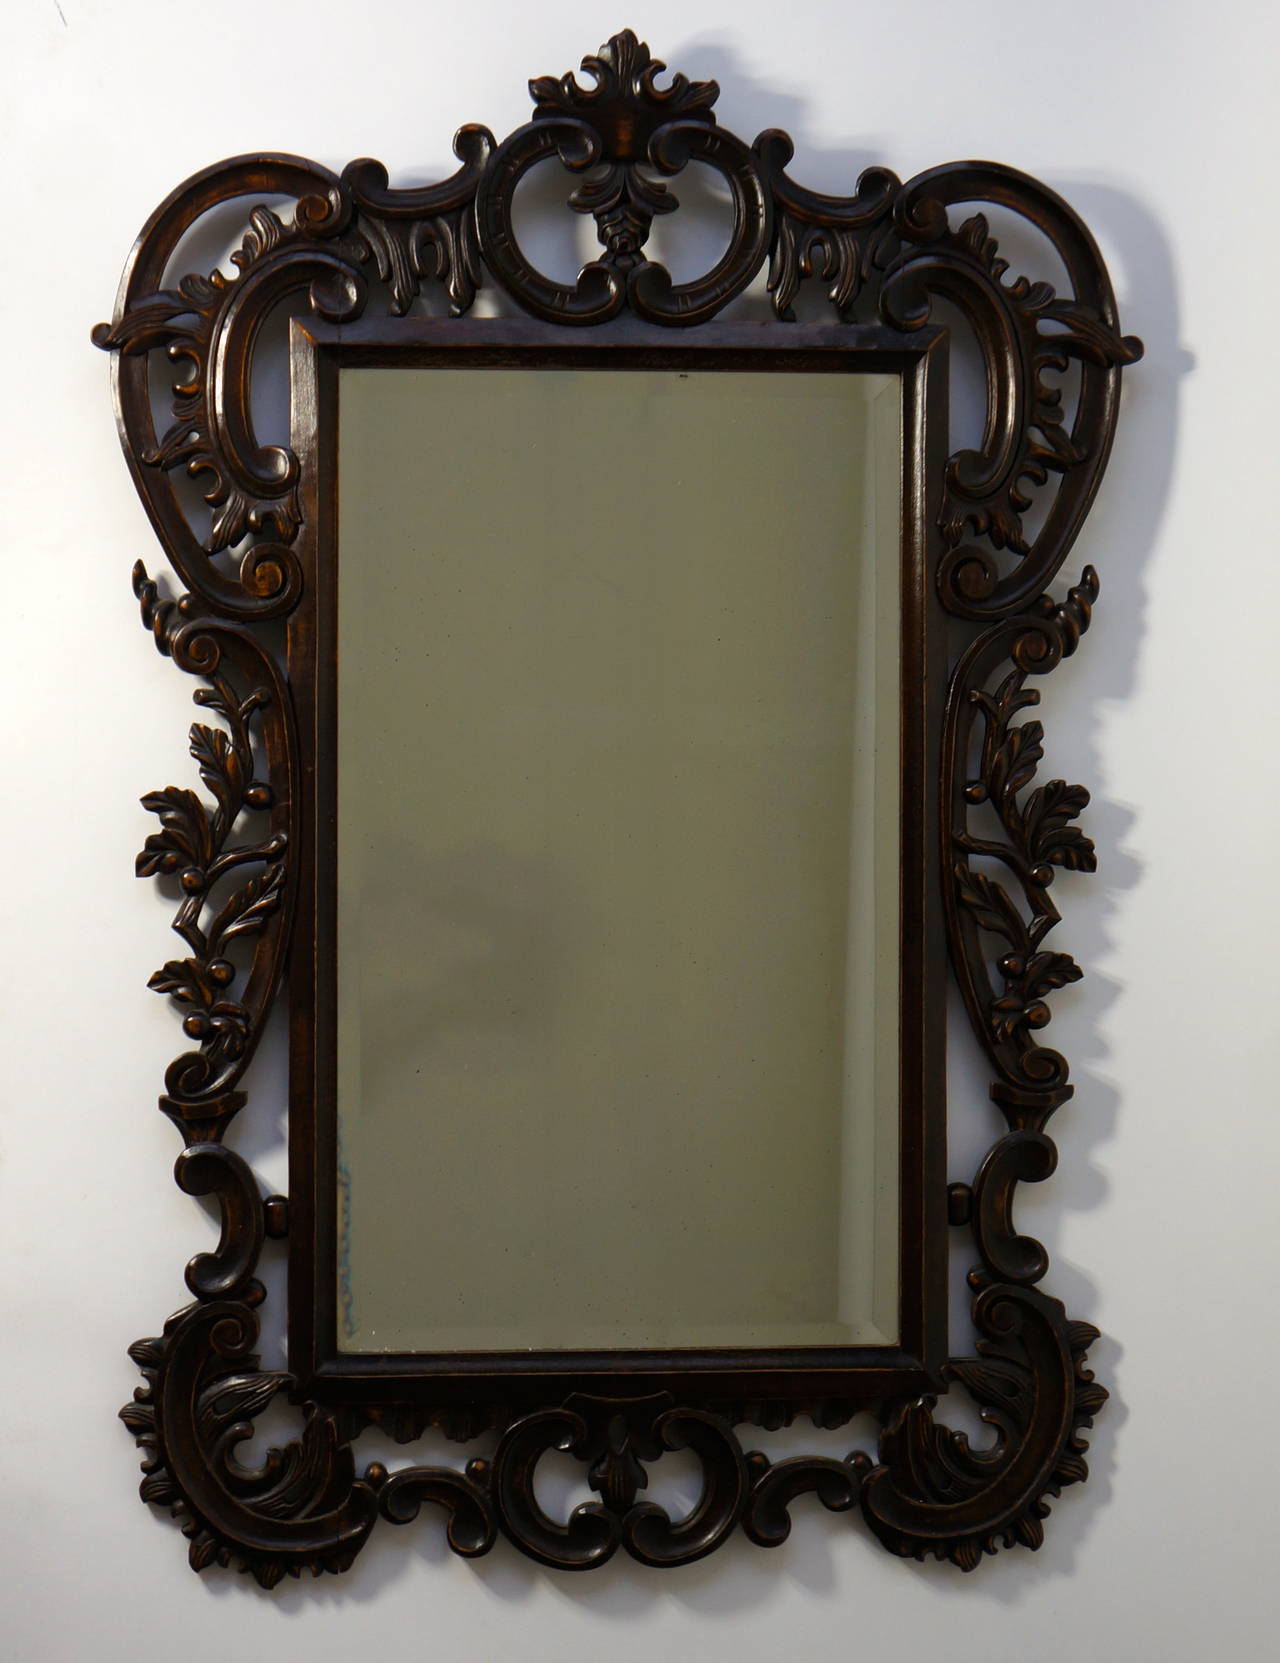 Un grand miroir vintage très sculpté dans le style baroque avec une belle patine. Cet article convient parfaitement à un environnement formel ou informel.
Qu'il s'agisse d'une maison de plage ou d'un loft urbain, ce miroir couvre tous les